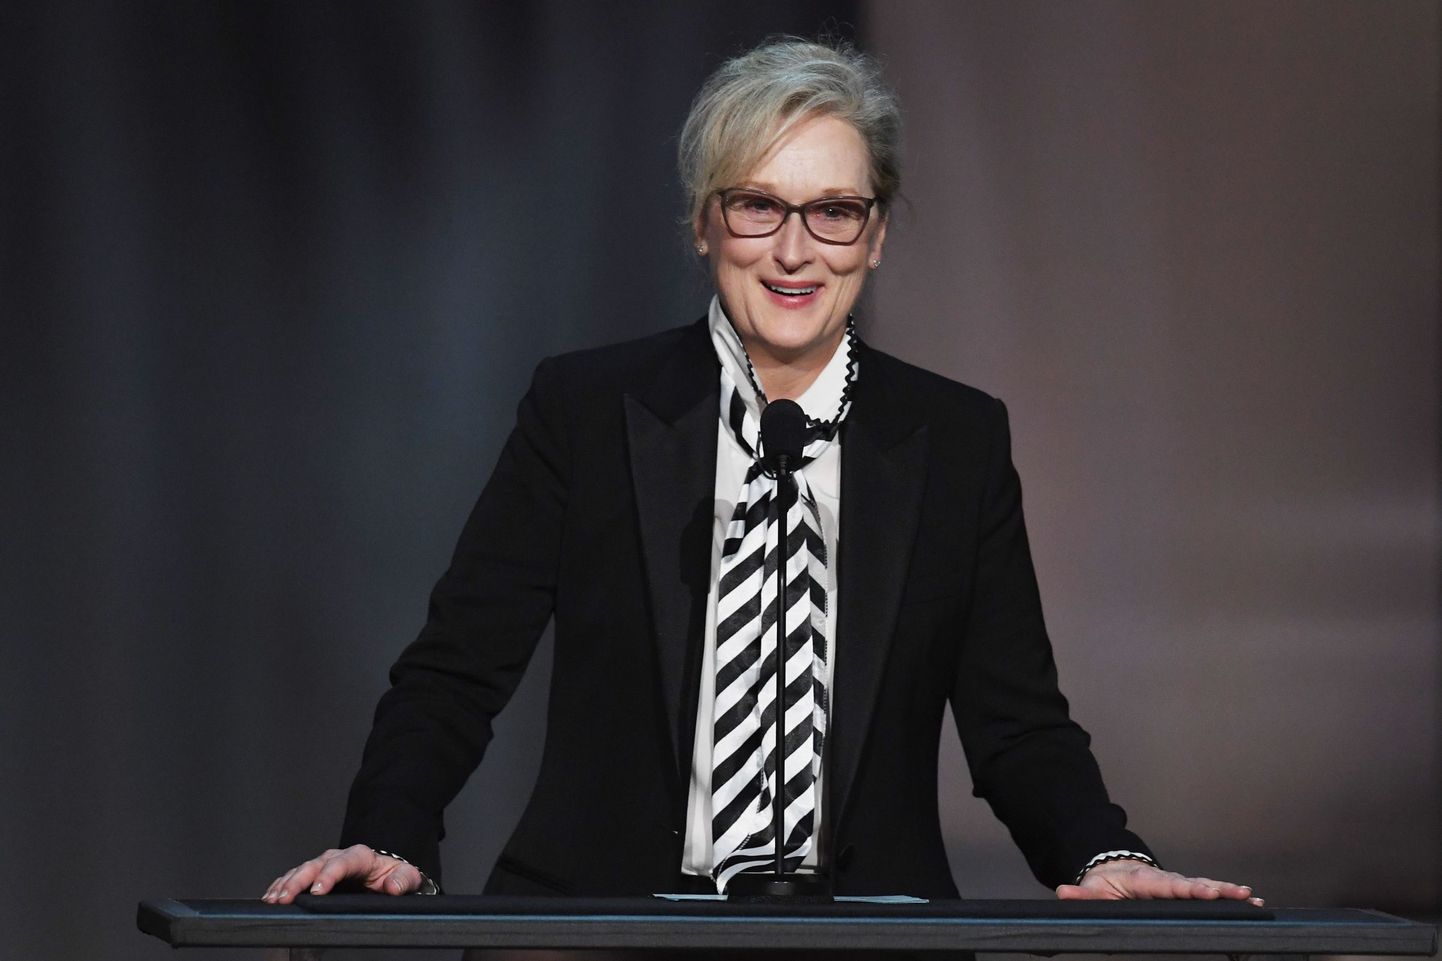 Meryl Streep plaanib tulevasel Oscarite jagamisel kanda sümboolset musta kleiti, mis oleks protest seksuaalse ahistamise vastu